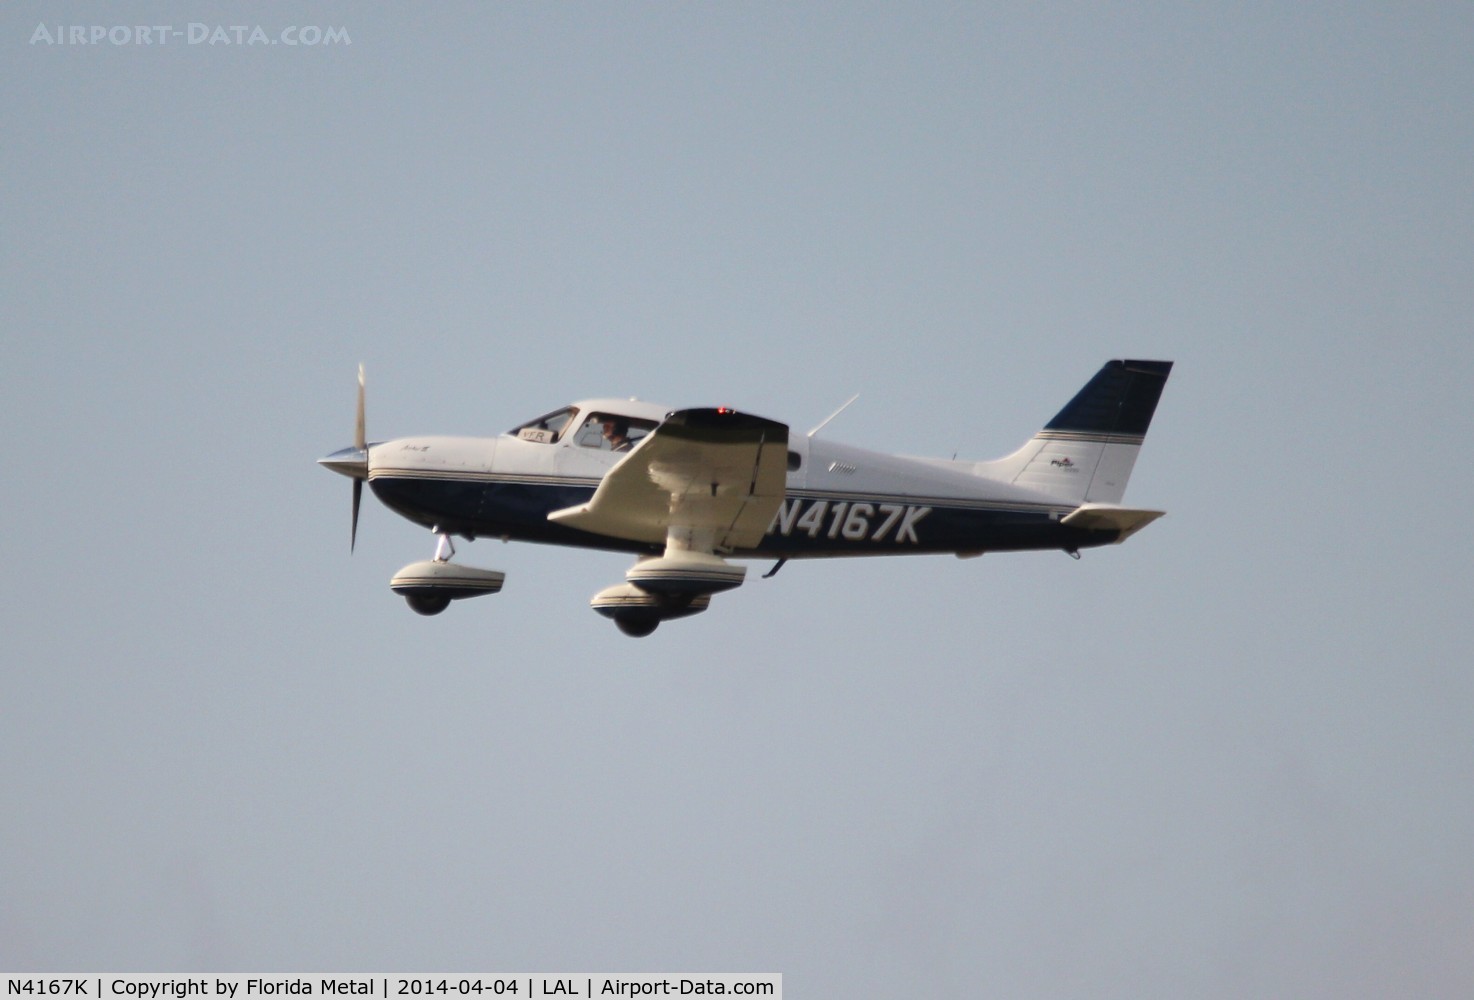 N4167K, 2000 Piper PA-28-181 C/N 2843342, PA-28-181